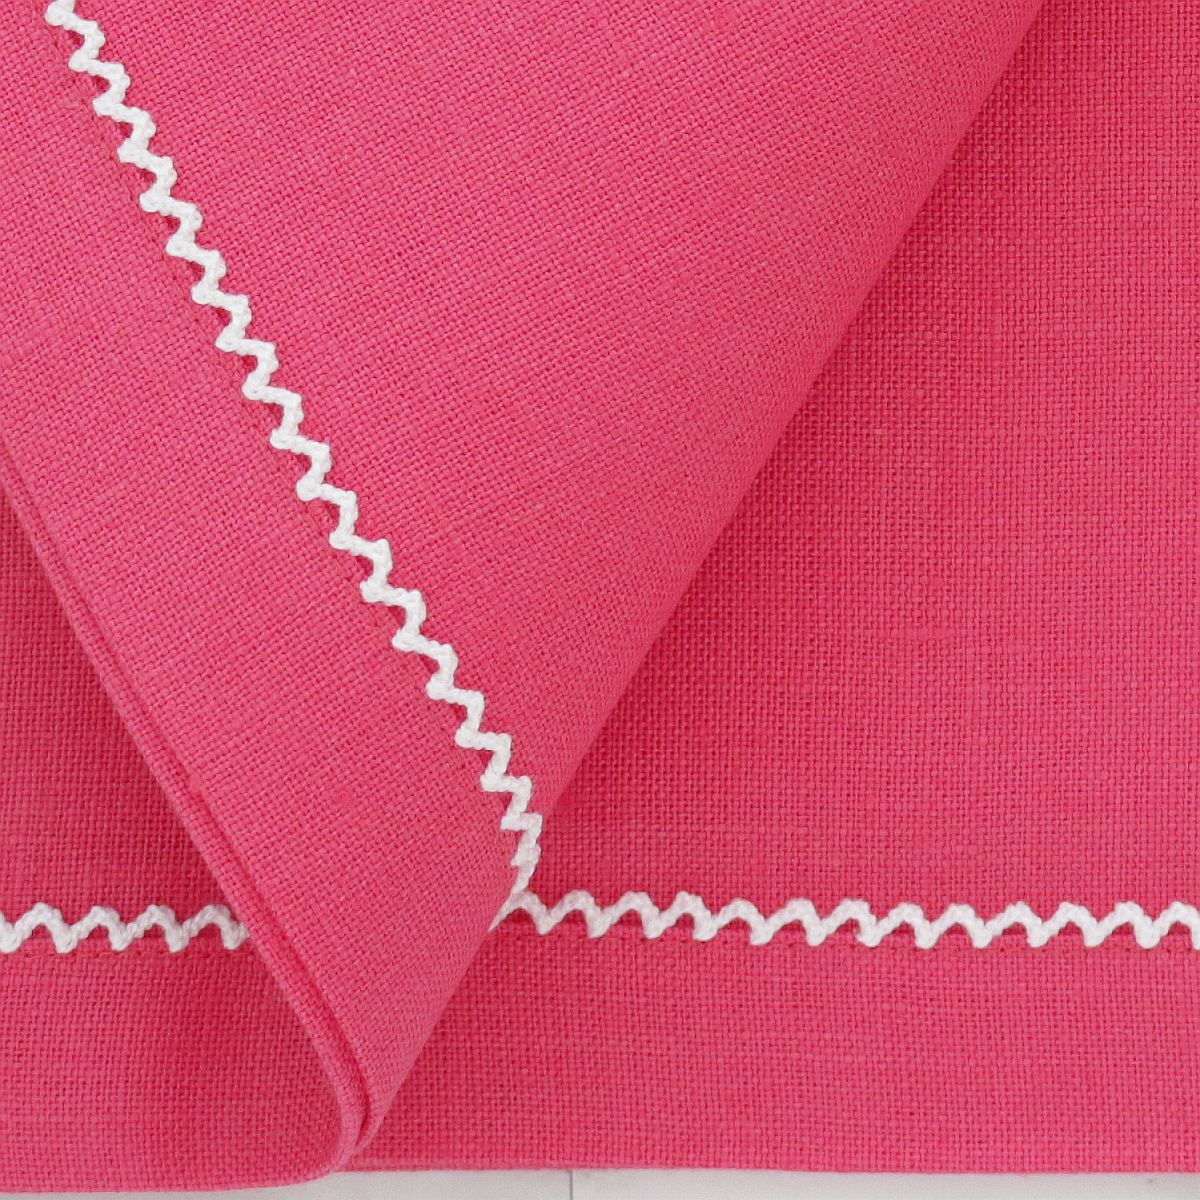 Tovaglioli da pranzo in lino rosa rossetto con finiture in picot bianco invertito (set di 4)